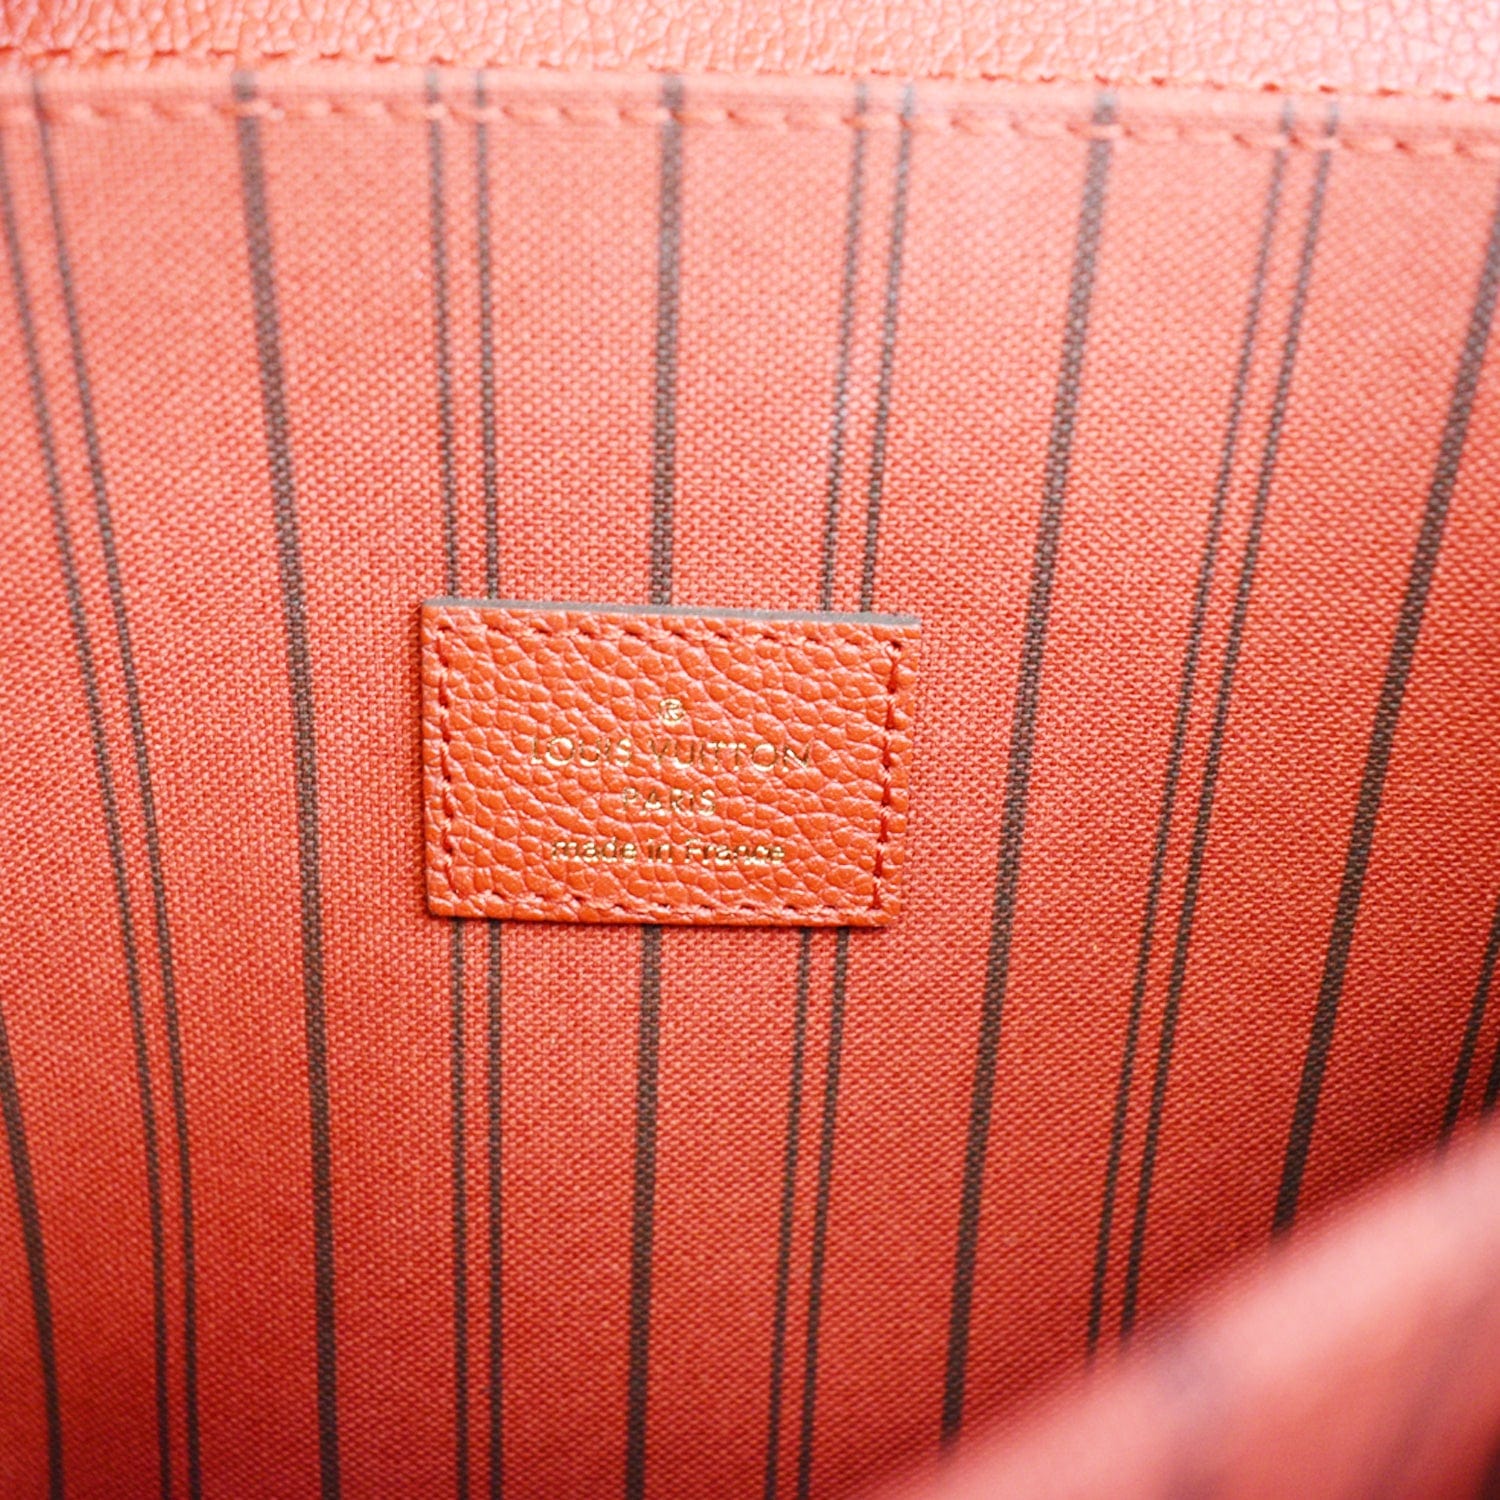 Louis Vuitton Pochette Métis Empreinte Cerise Red Leather Cross Body Bag